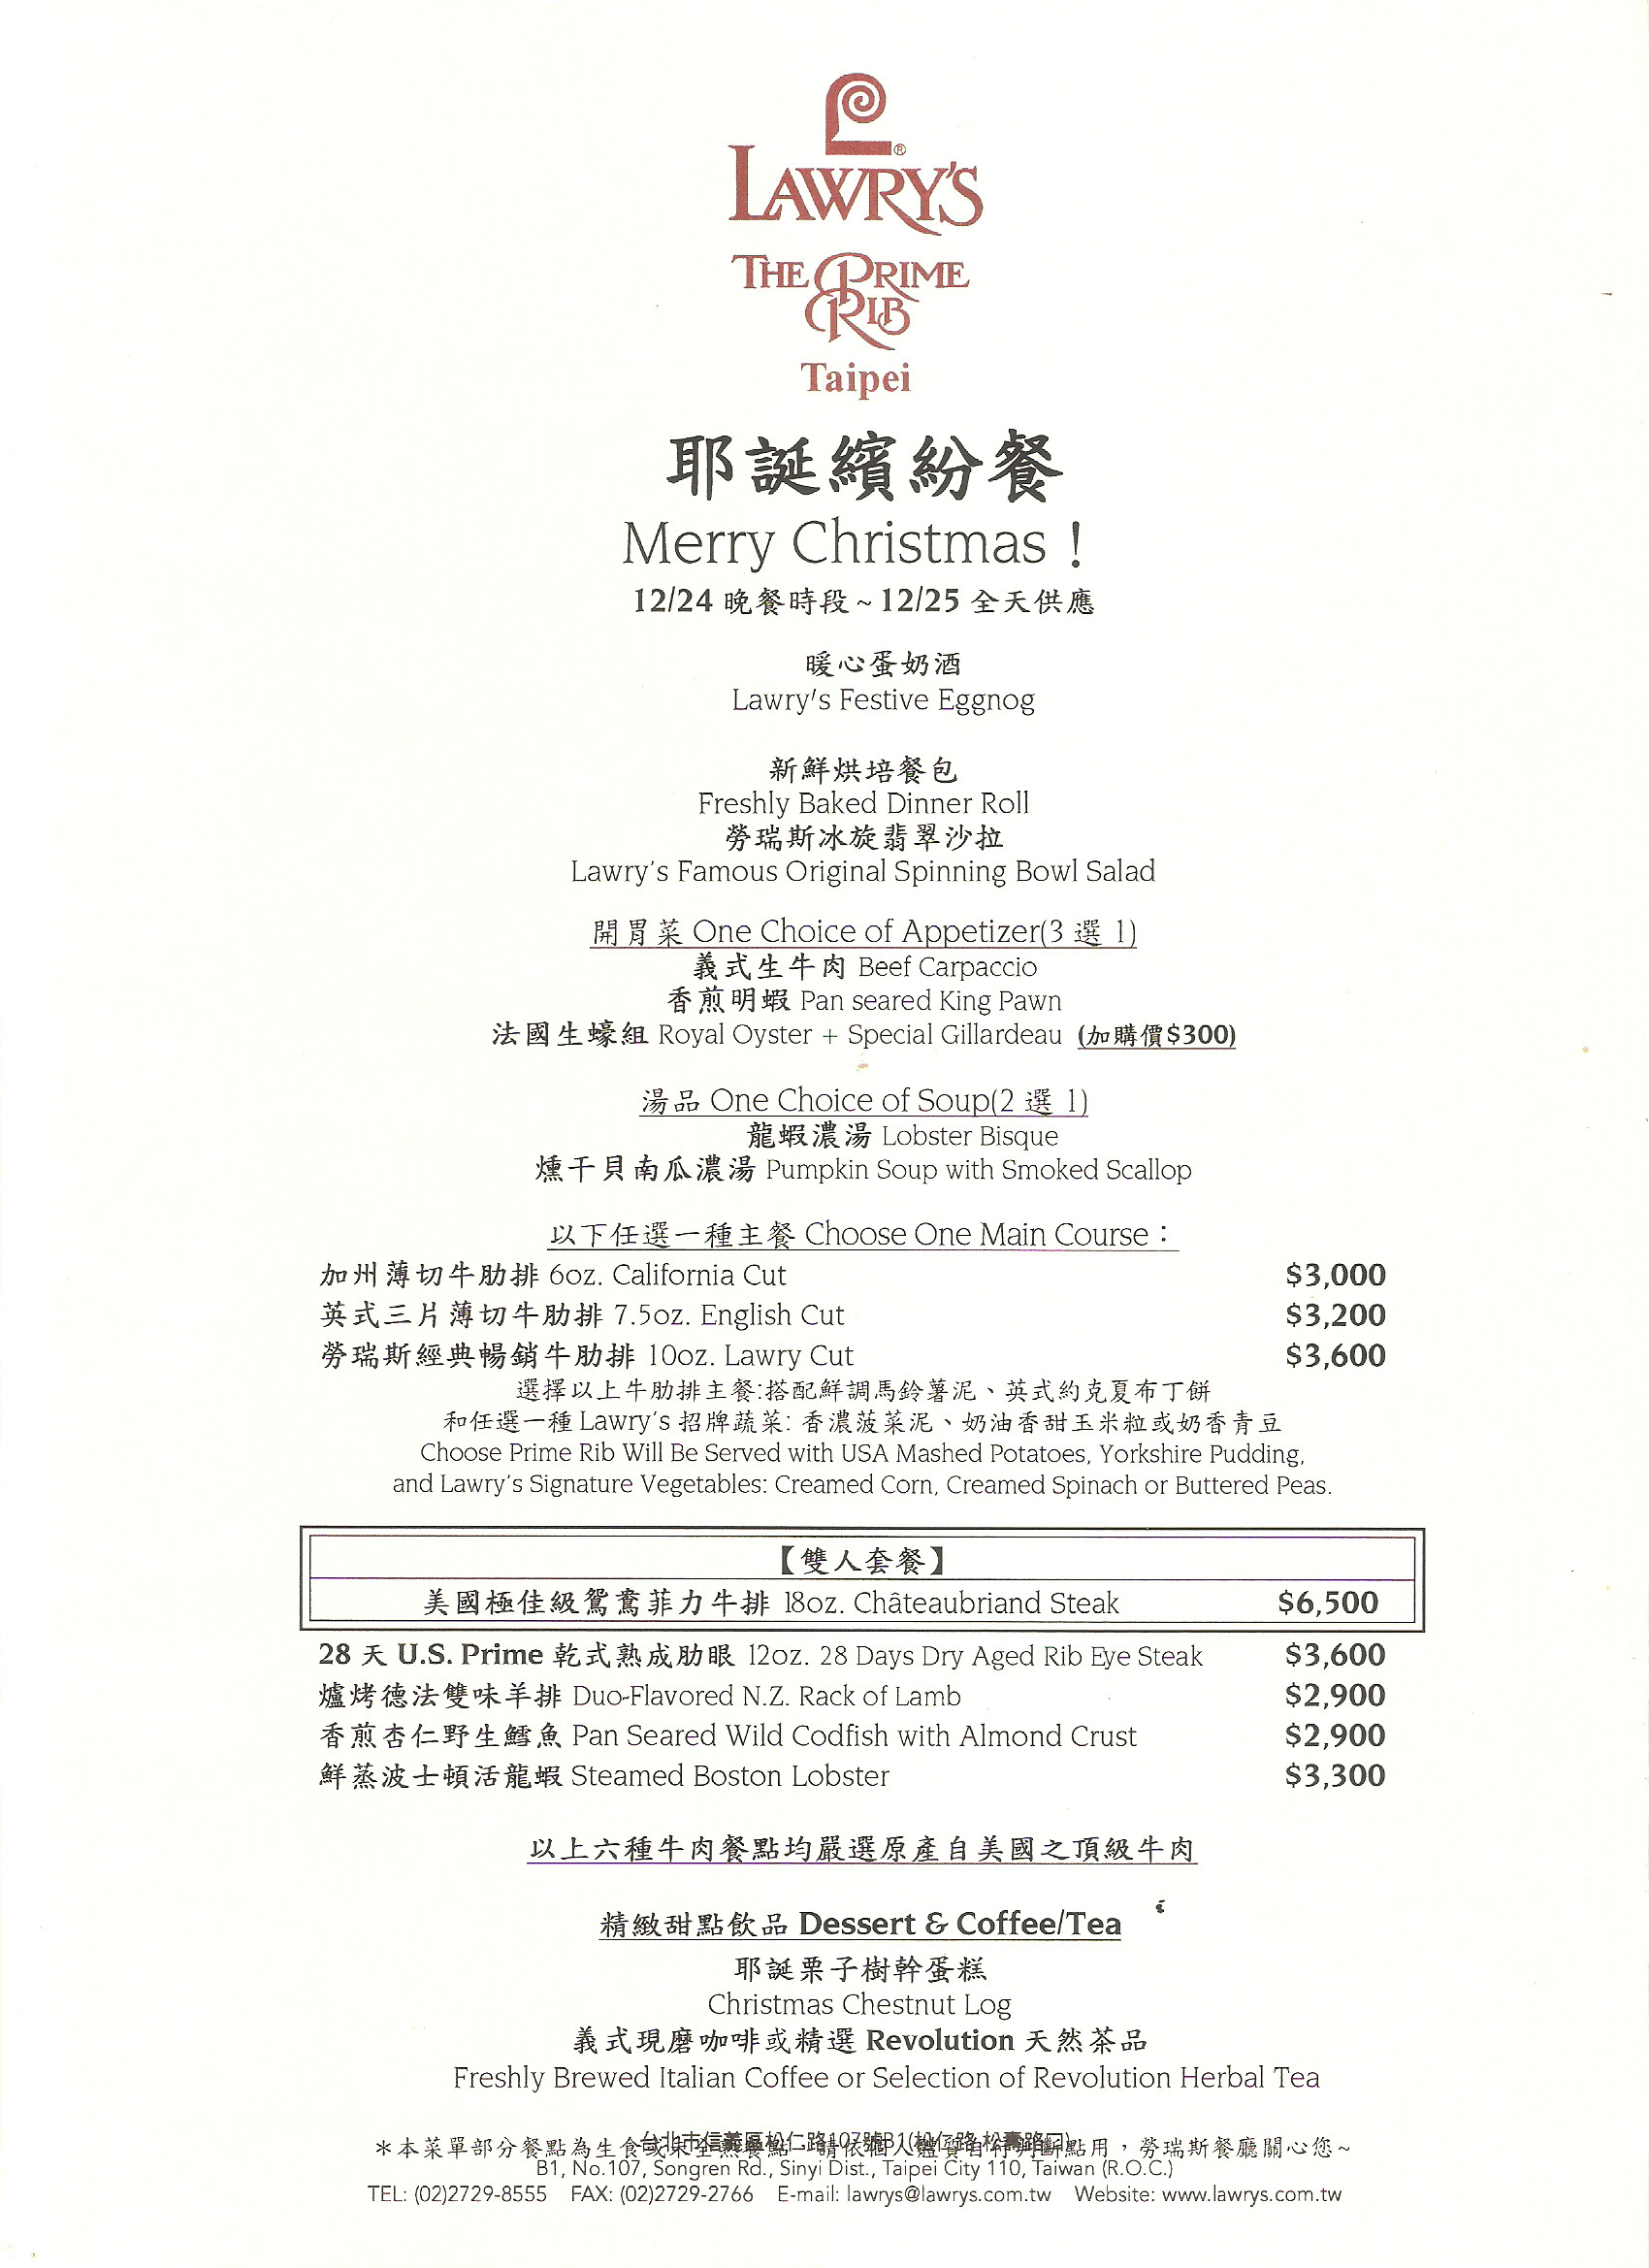 Prime Rib Christmas Dinner Menus
 Where to Get Christmas Dinner in Taipei Taiwan 2014